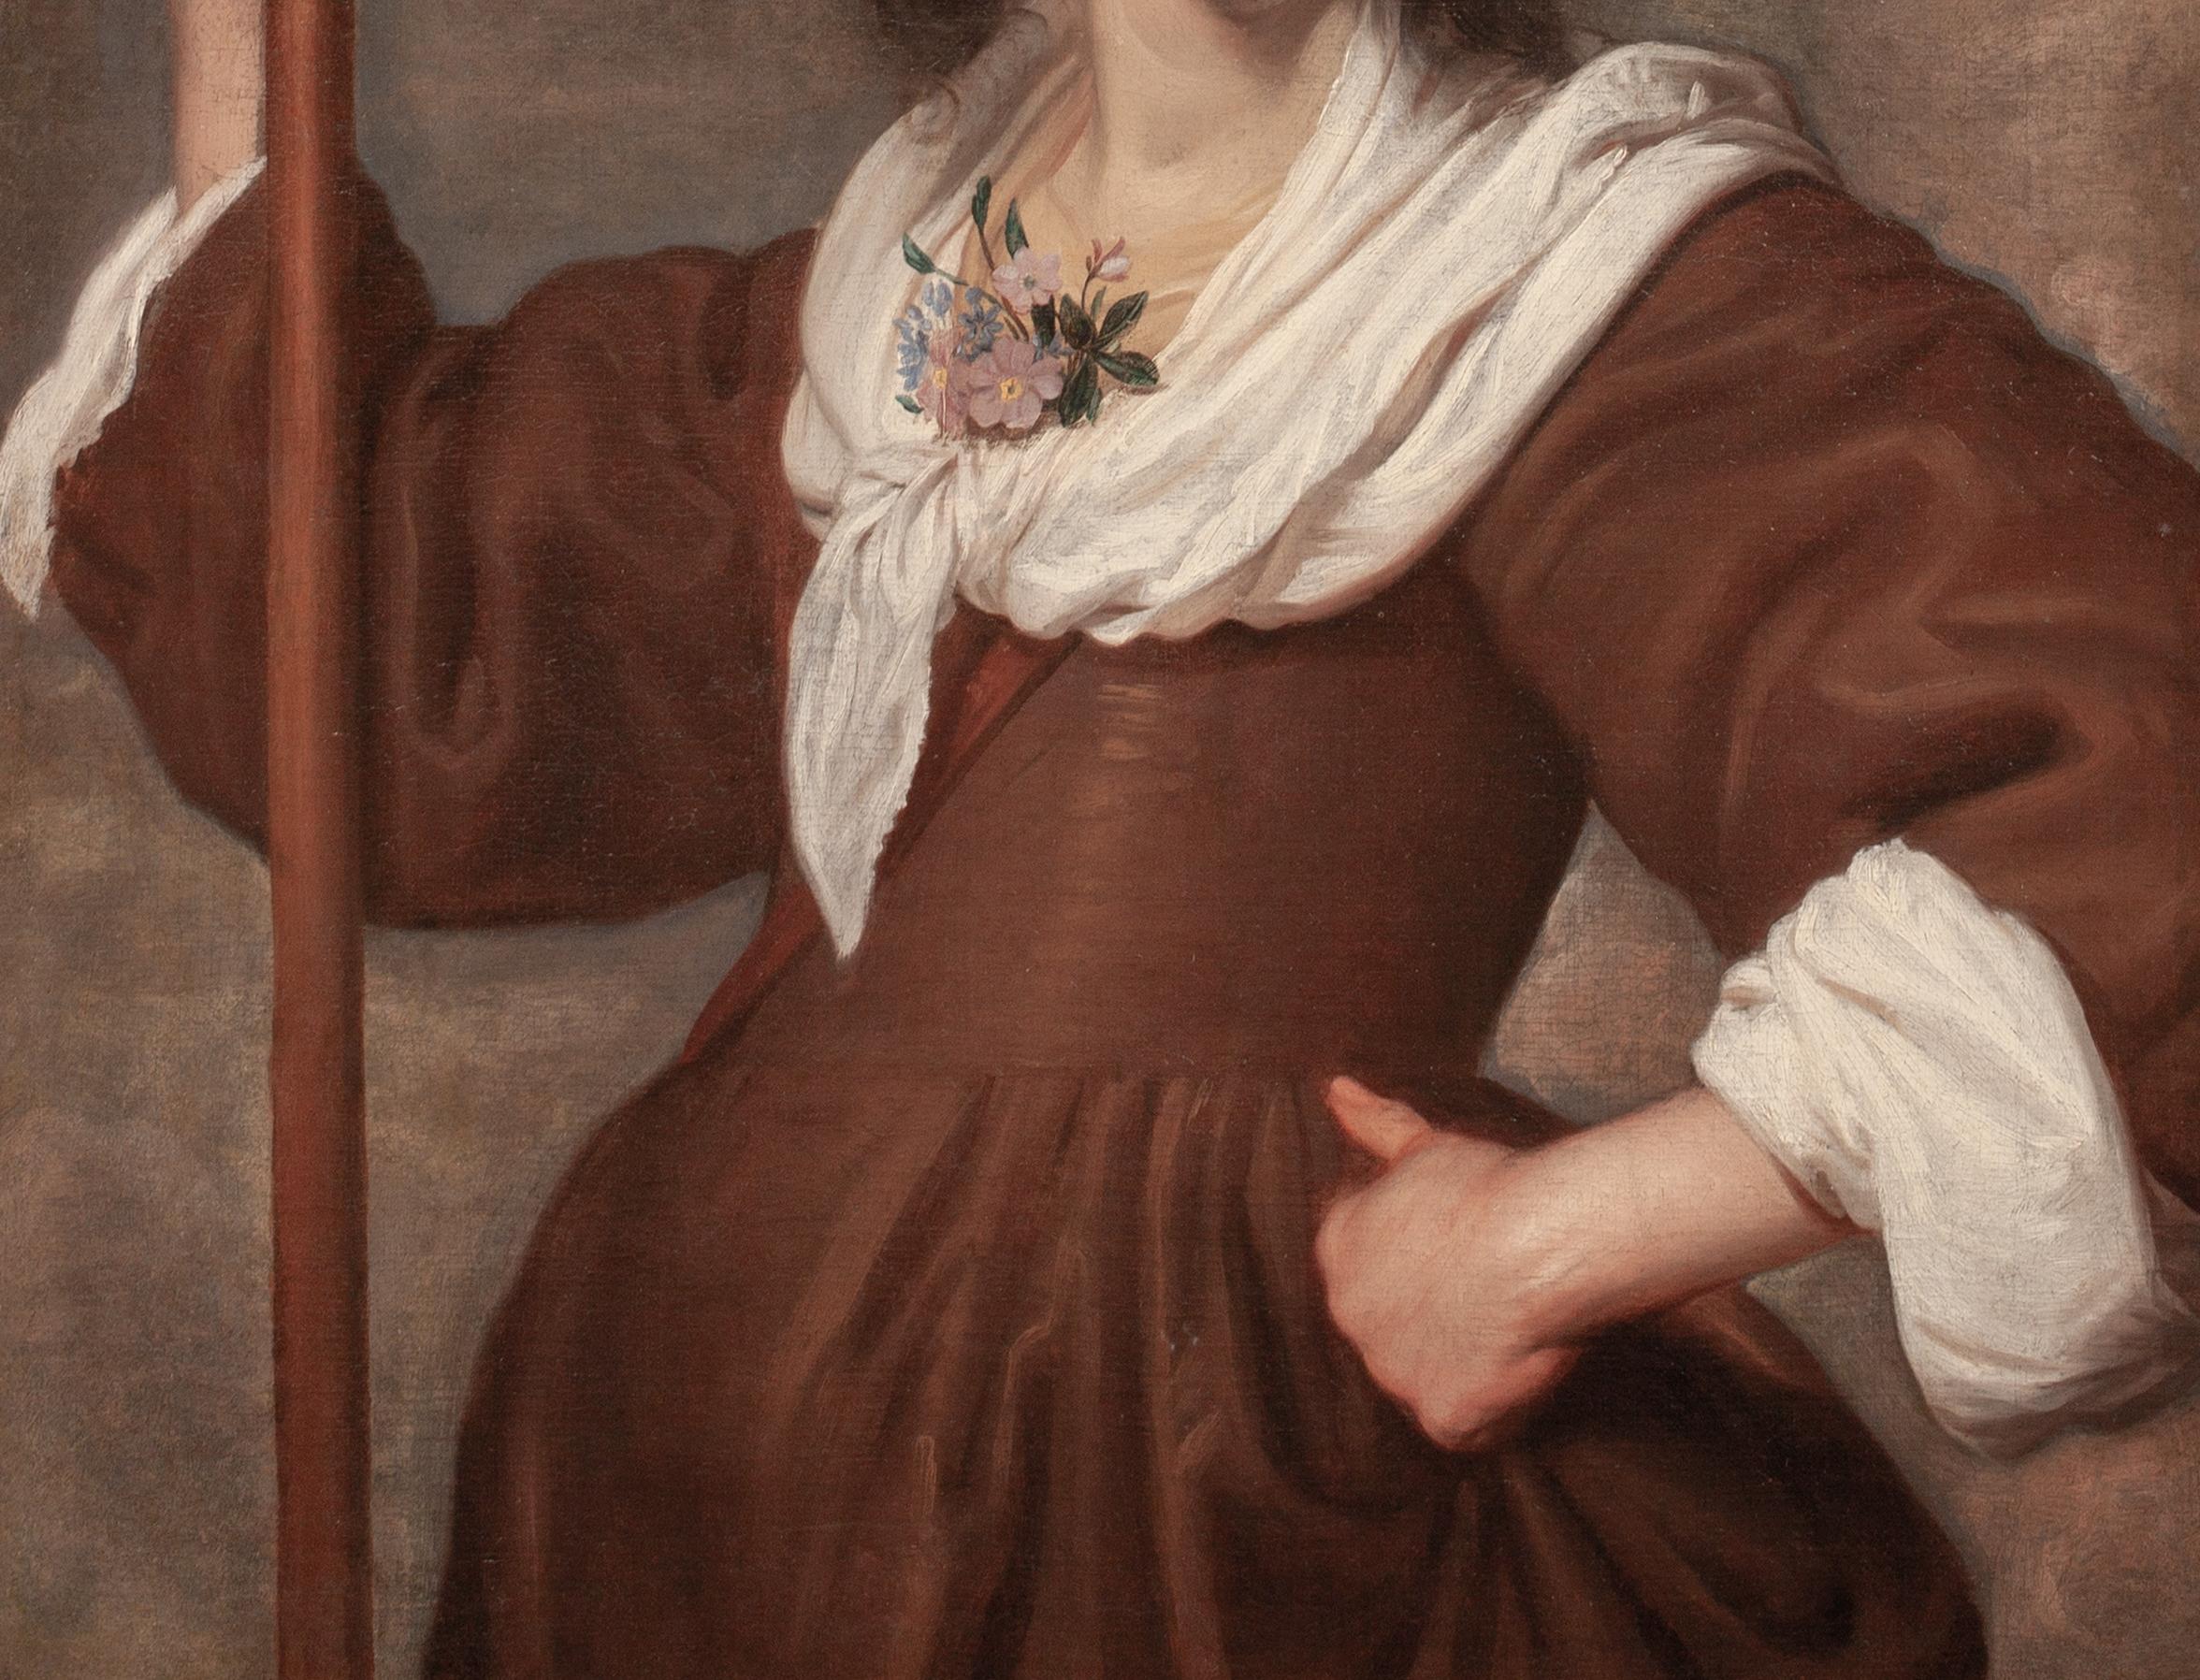 Portrait d'une dame sous les traits de Diane, 17e siècle

Salomon de Bray (1597-1664)

Grand portrait de maître ancien hollandais du 17e siècle représentant une dame en Diane, huile sur toile attribuée à Salomon De Bray. Qualité et état